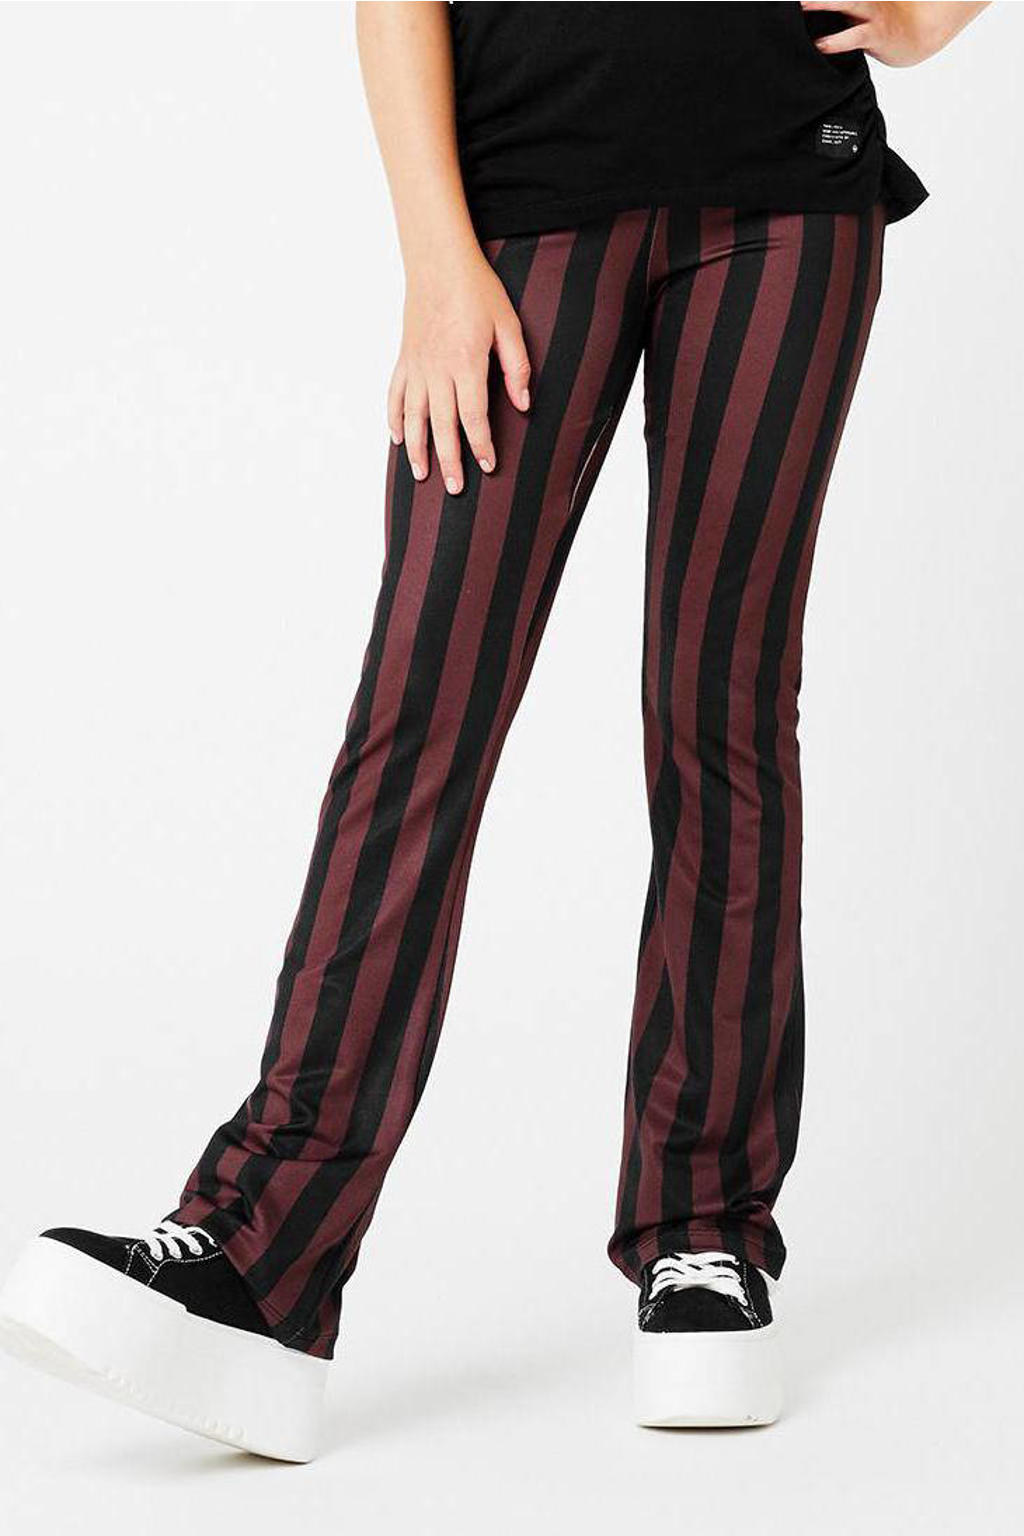 Bruine meisjes CoolCat Junior gestreepte flared broek Poppy 34 inch van polyester met regular waist